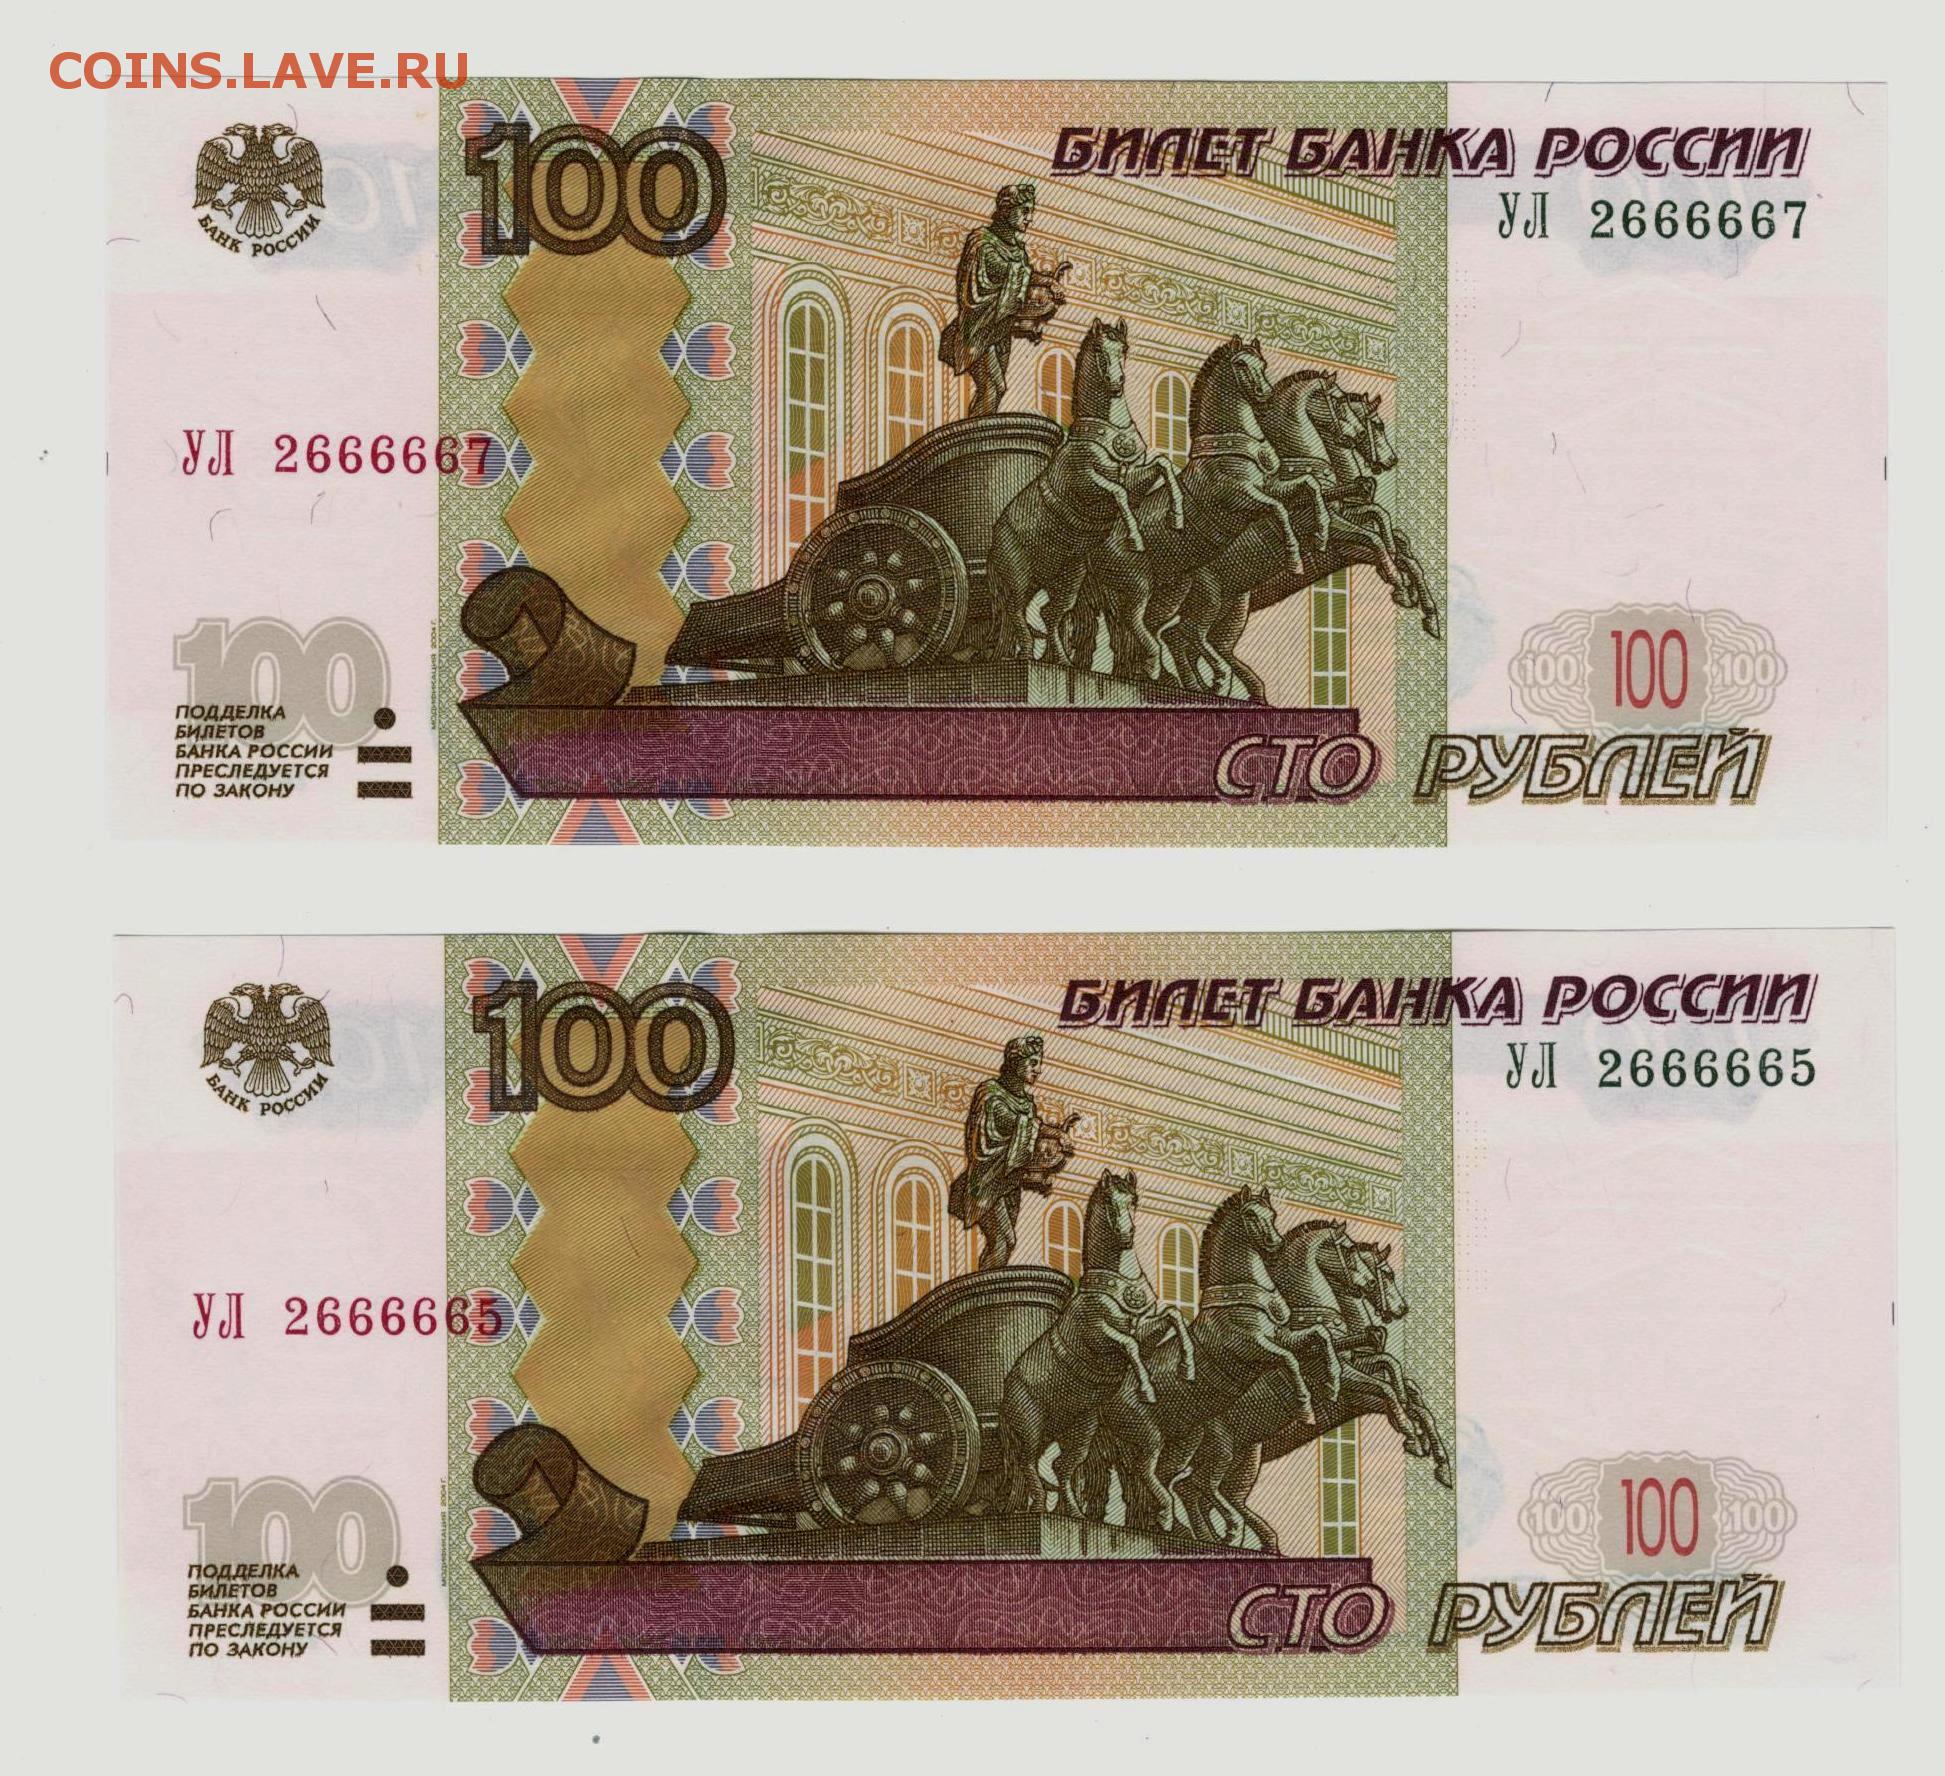 600 рублей россии. По300р по300р.